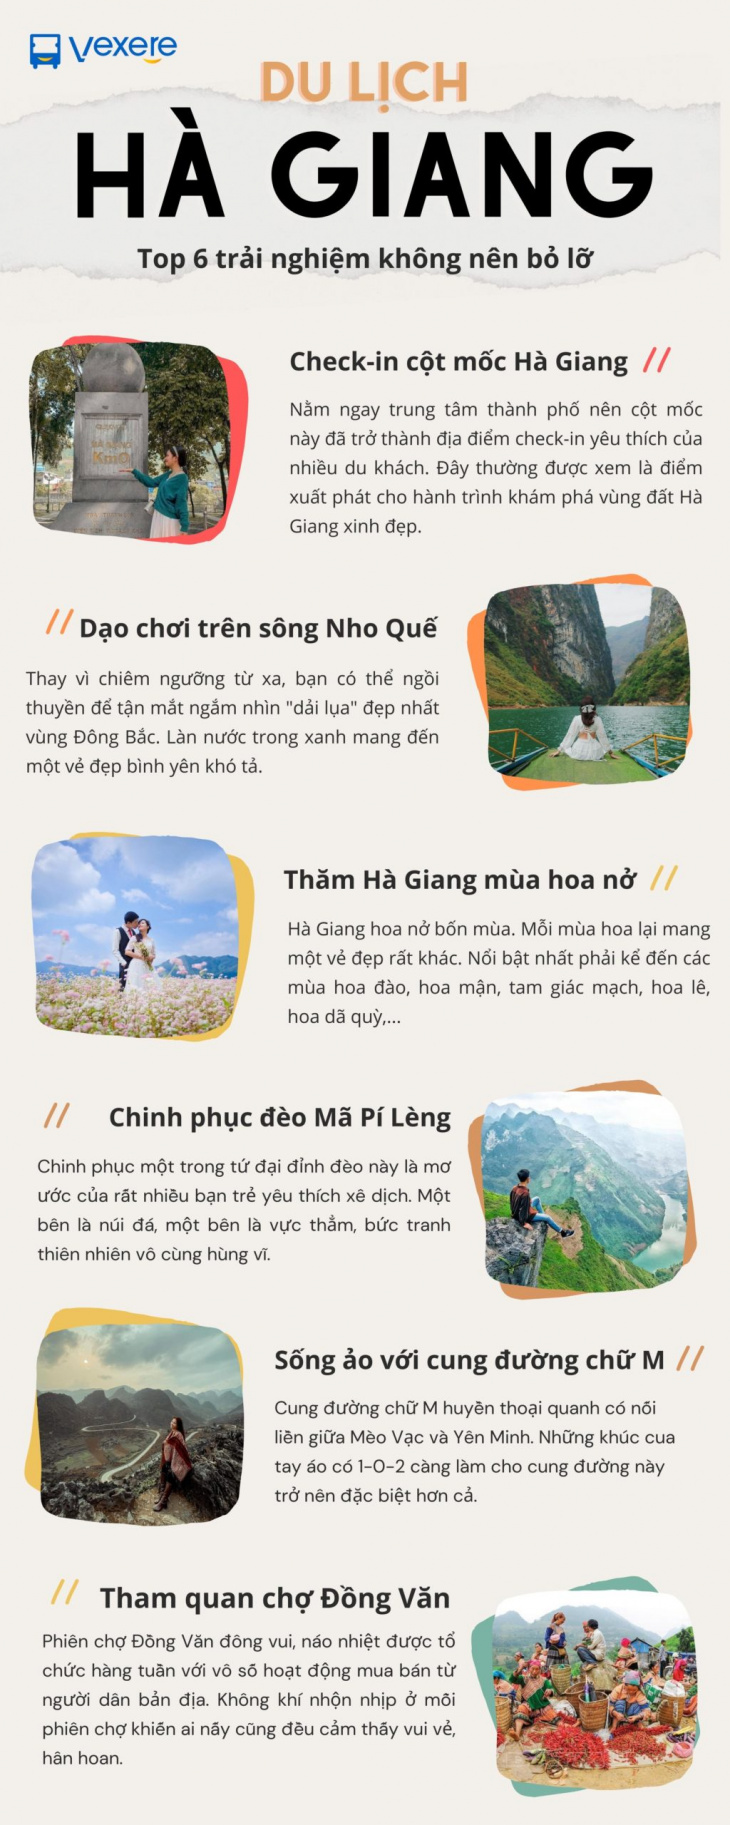 [Inforgraphic] Top 6 trải nghiệm không thể bỏ lỡ khi du lịch Hà Giang